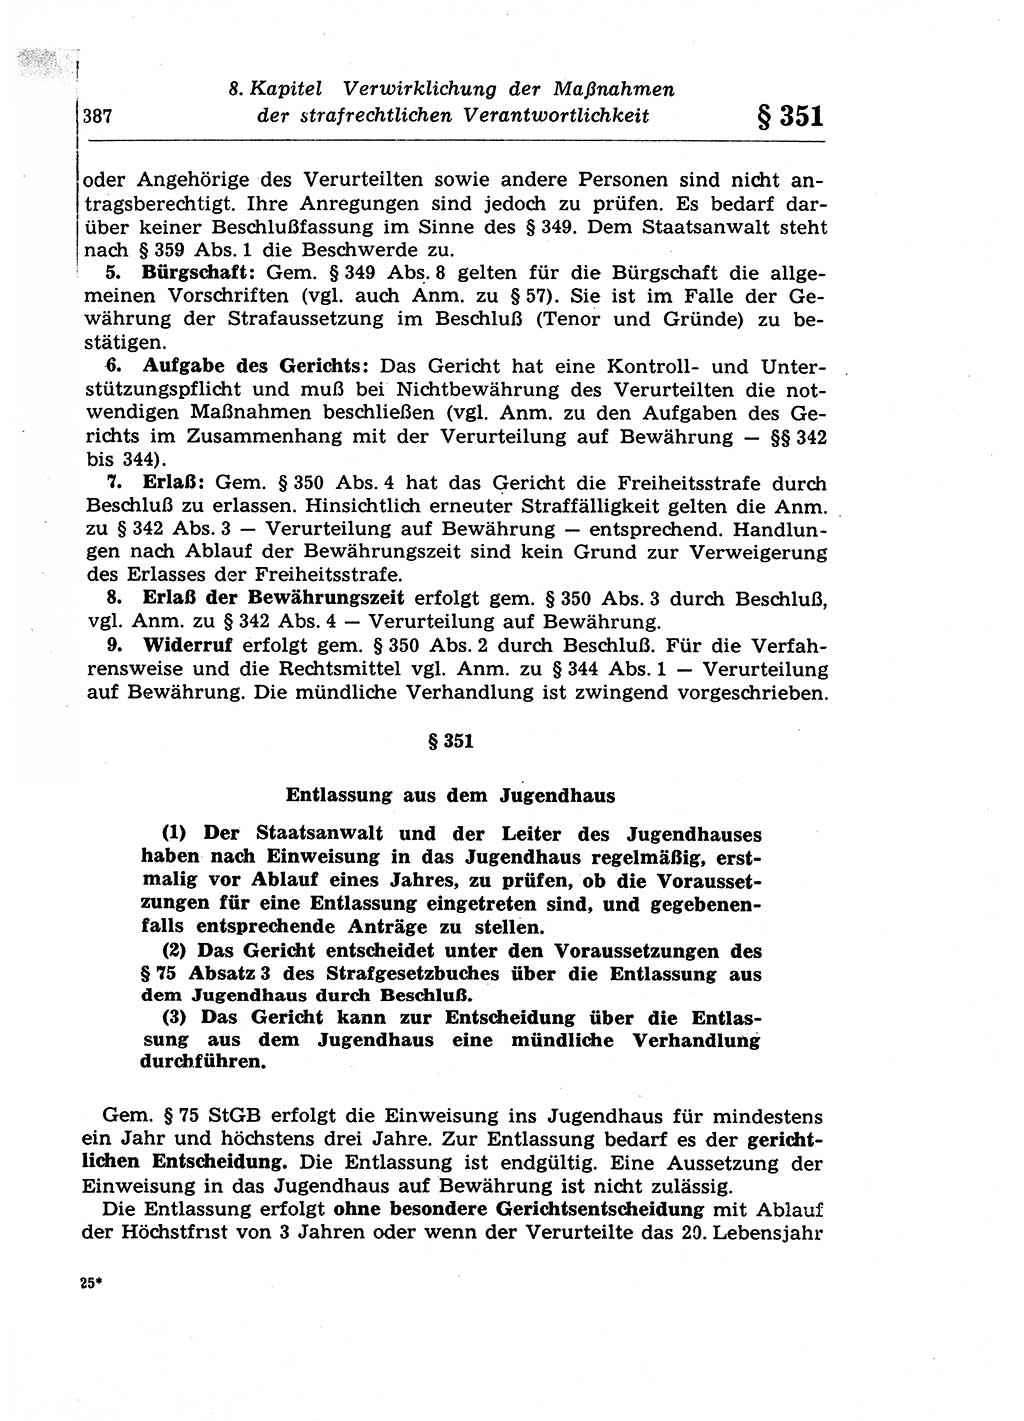 Strafprozeßrecht der DDR (Deutsche Demokratische Republik), Lehrkommentar zur Strafprozeßordnung (StPO) 1968, Seite 387 (Strafprozeßr. DDR Lehrkomm. StPO 19688, S. 387)